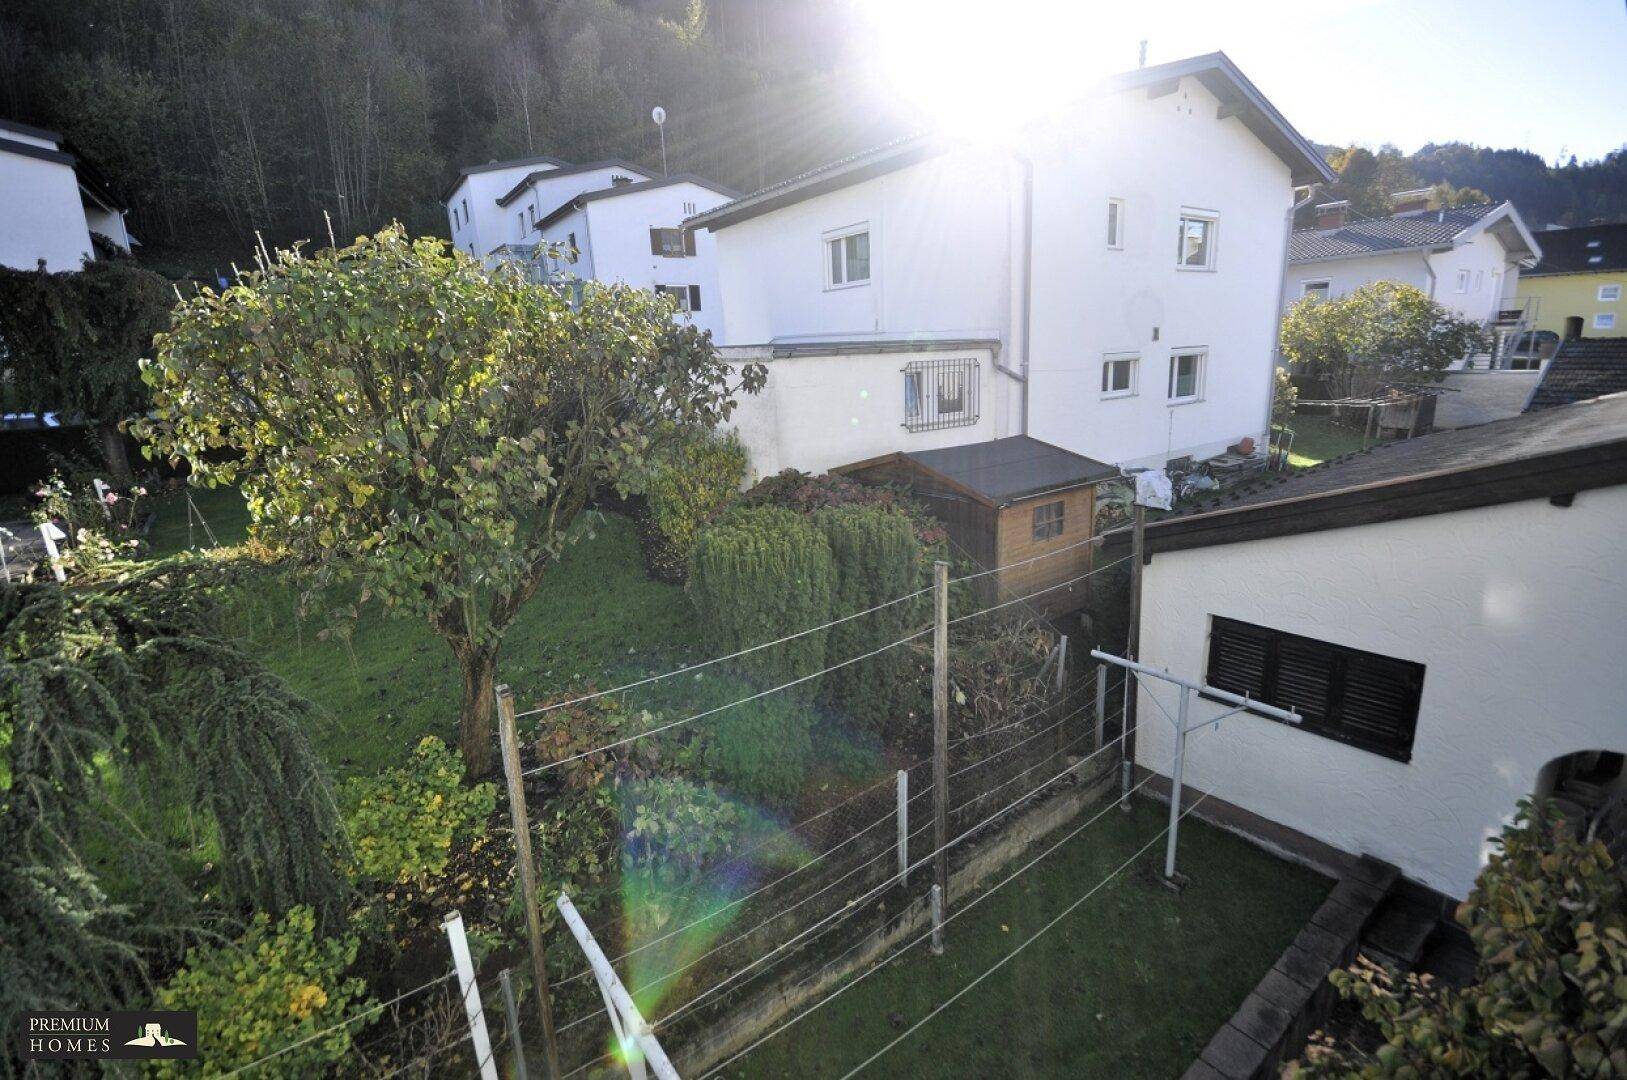 Gepflegtes Mehrfamilienhaus in Wattens - Gartenblick aus dem Schlafzimmer